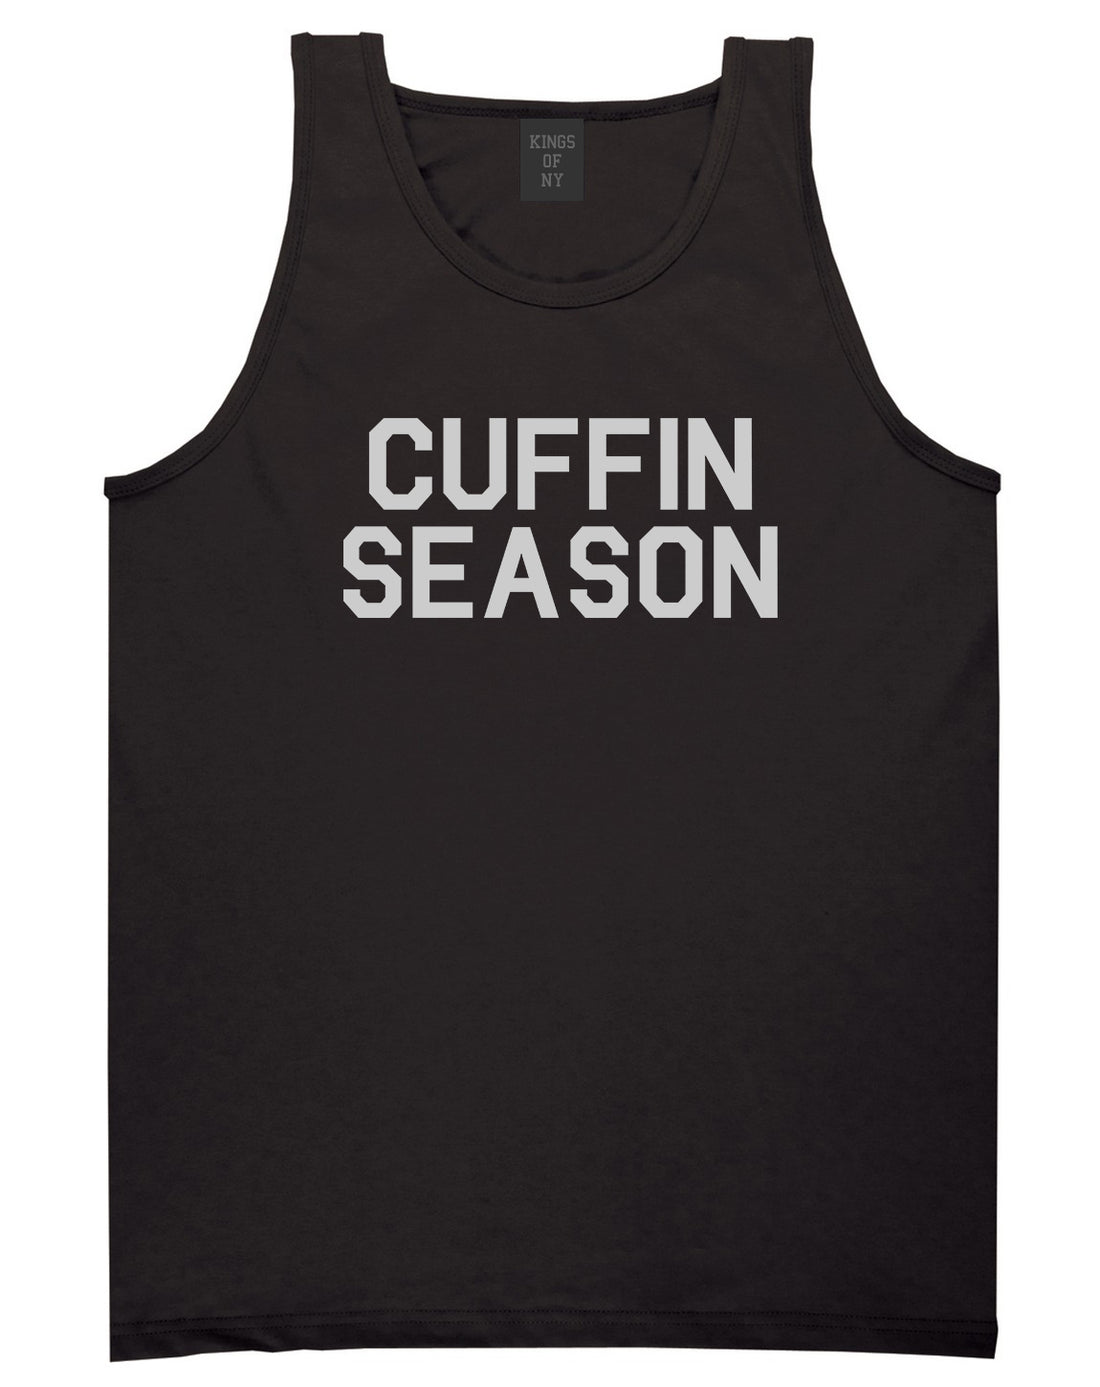 Cuffin Season Mens Tank Top Shirt Black